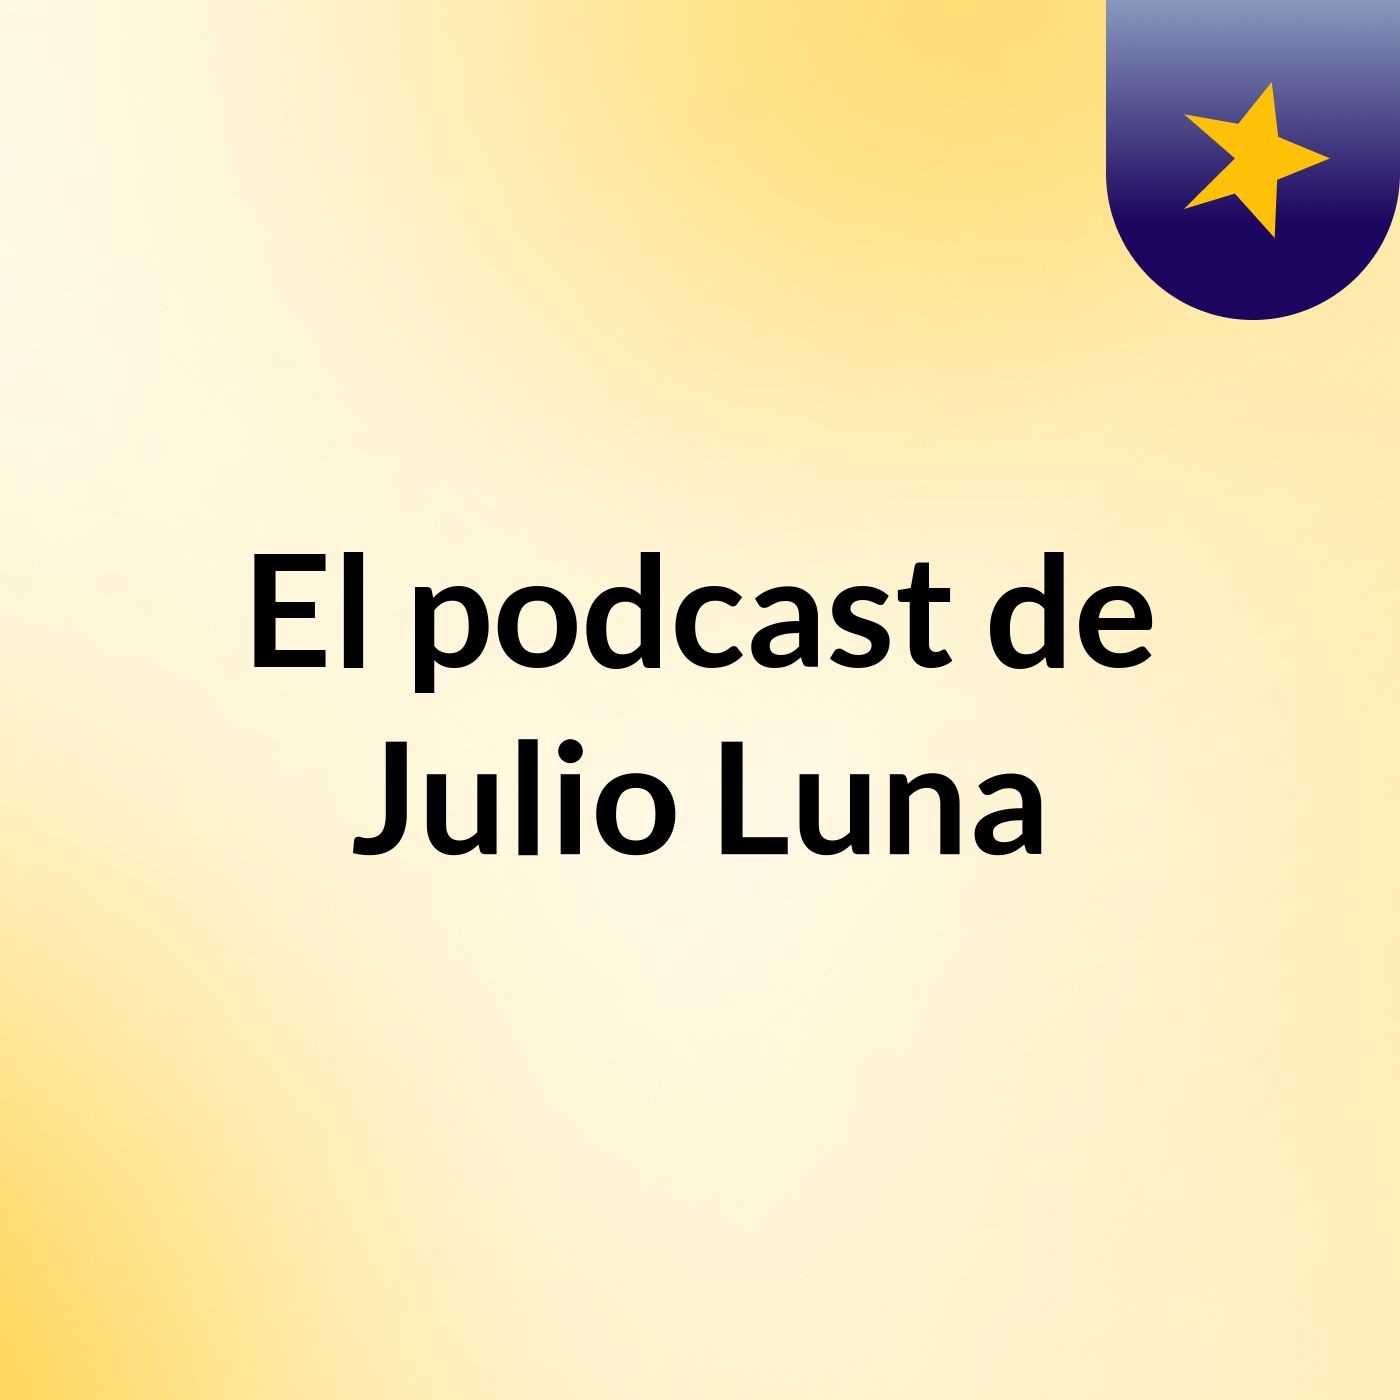 El podcast de Julio Luna